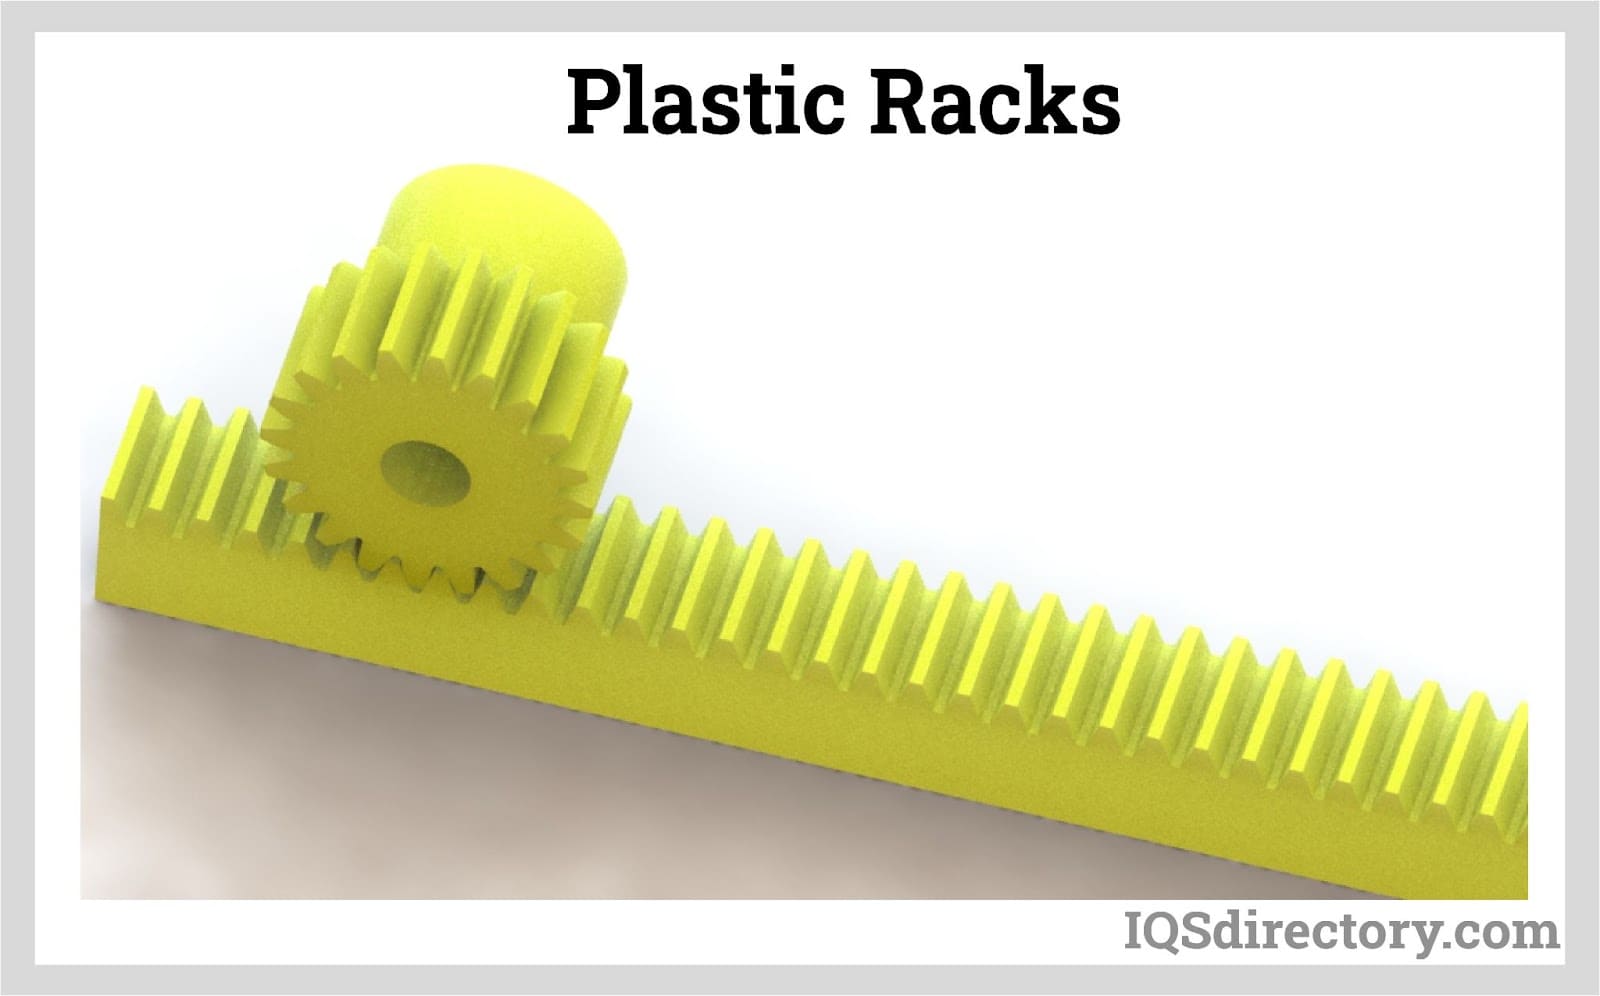  Plastic Racks